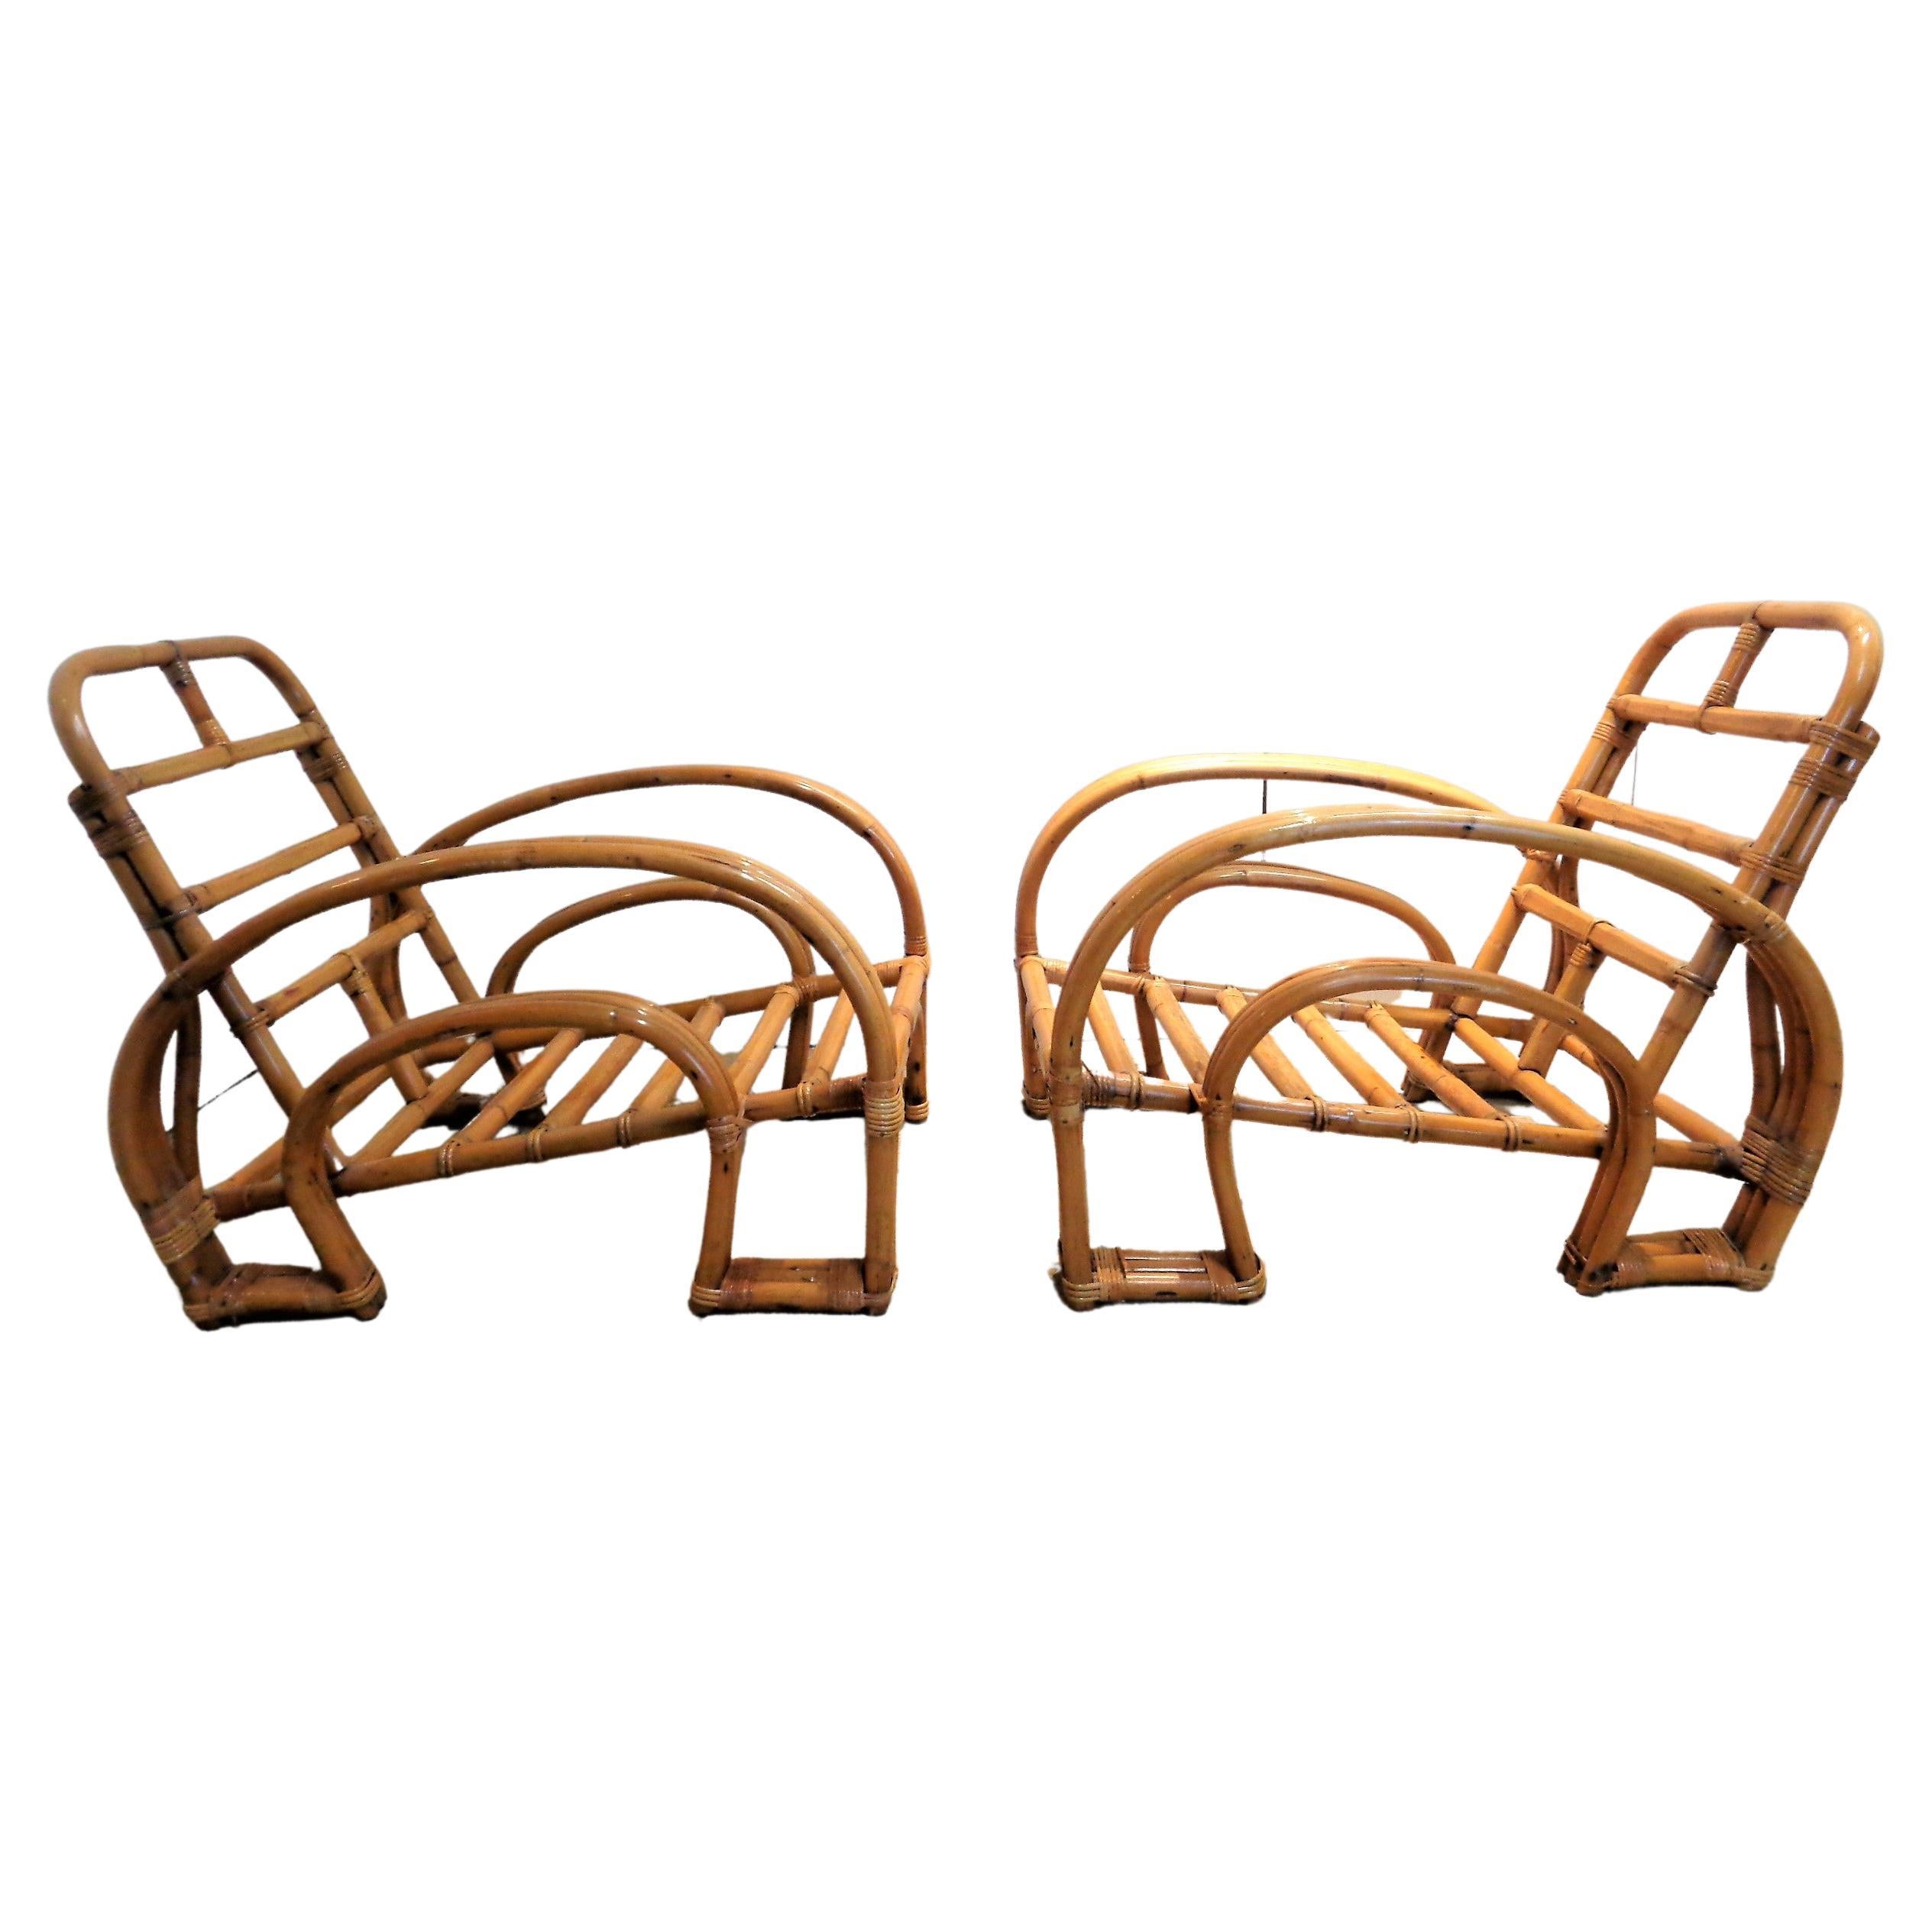 Außergewöhnliches Paar von Art Deco drei Strang Rattan und Rohr Doppel Hufeisen Lounge Stühle in schön gealtert ursprünglichen leuchtenden Farbe Oberfläche. Paul Frankl zugeschrieben, ca. 1940-1950. Stühle messen 30